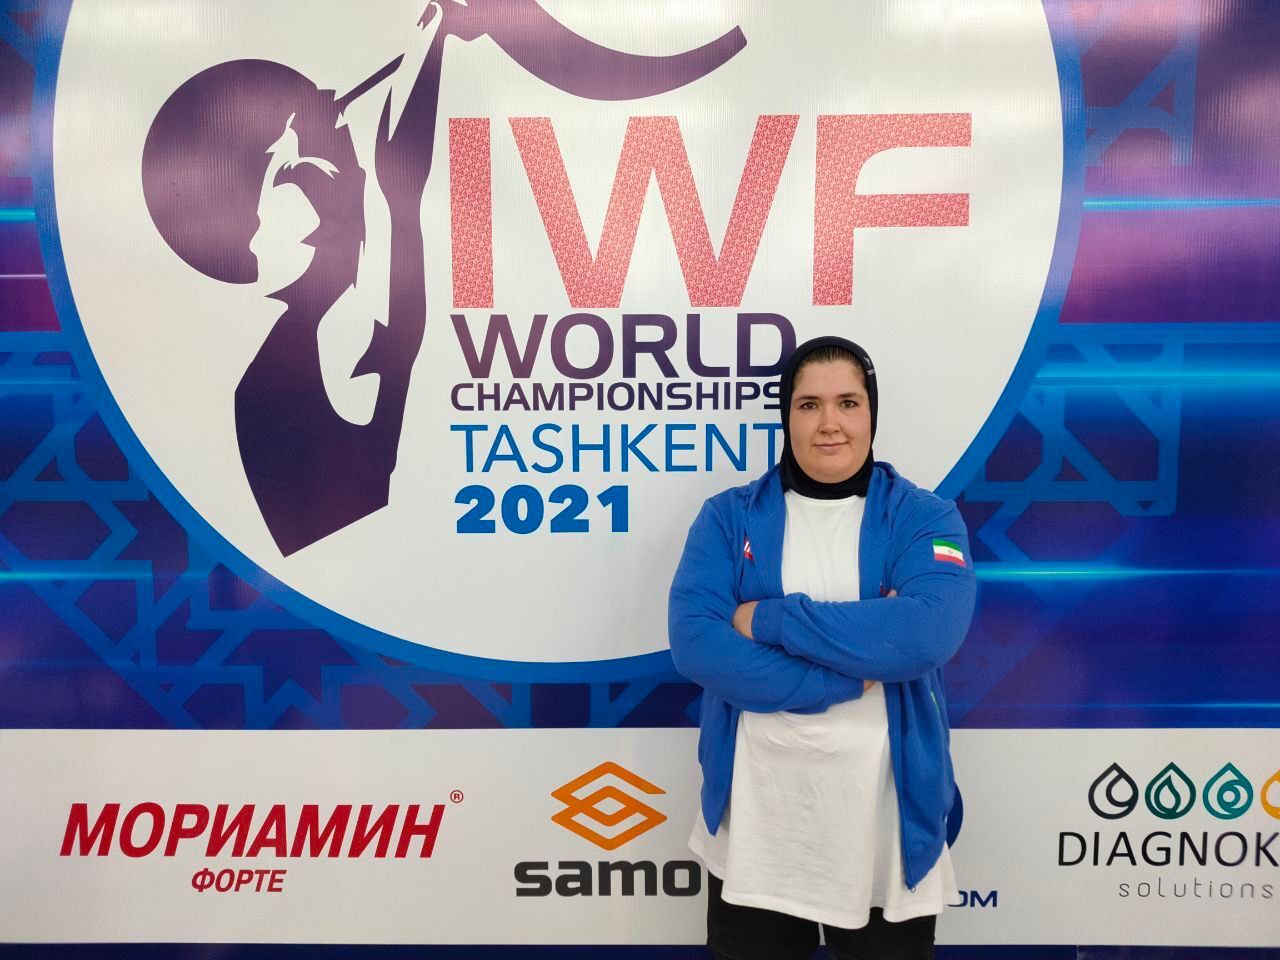 وزنه برداری زنان جهان؛ رکوردشکنی «فاطمه یوسفی» دختر فوق سنگین ایران